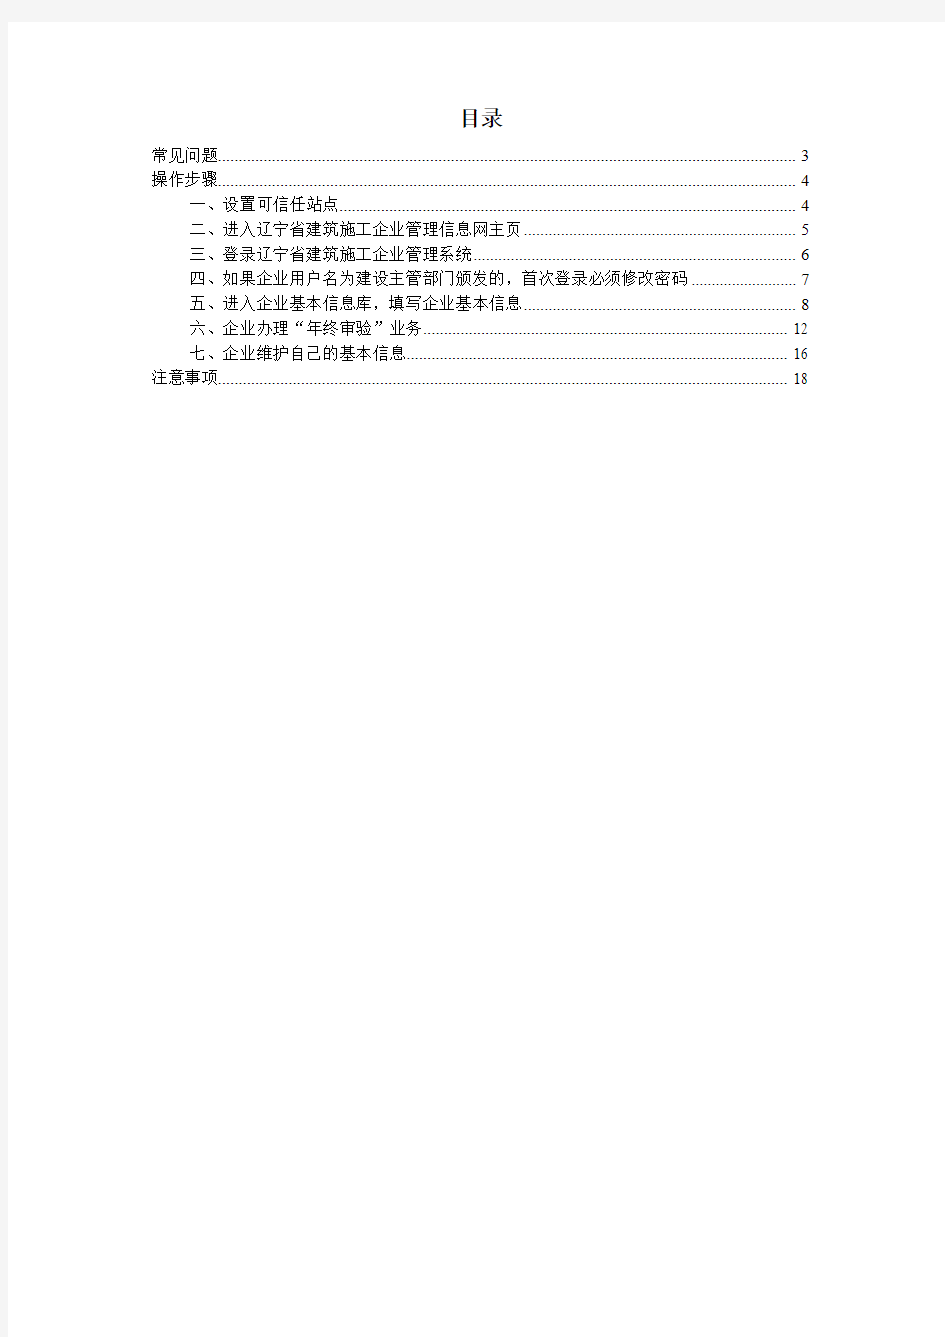 辽宁省建筑施工企业管理信息系统操作说明